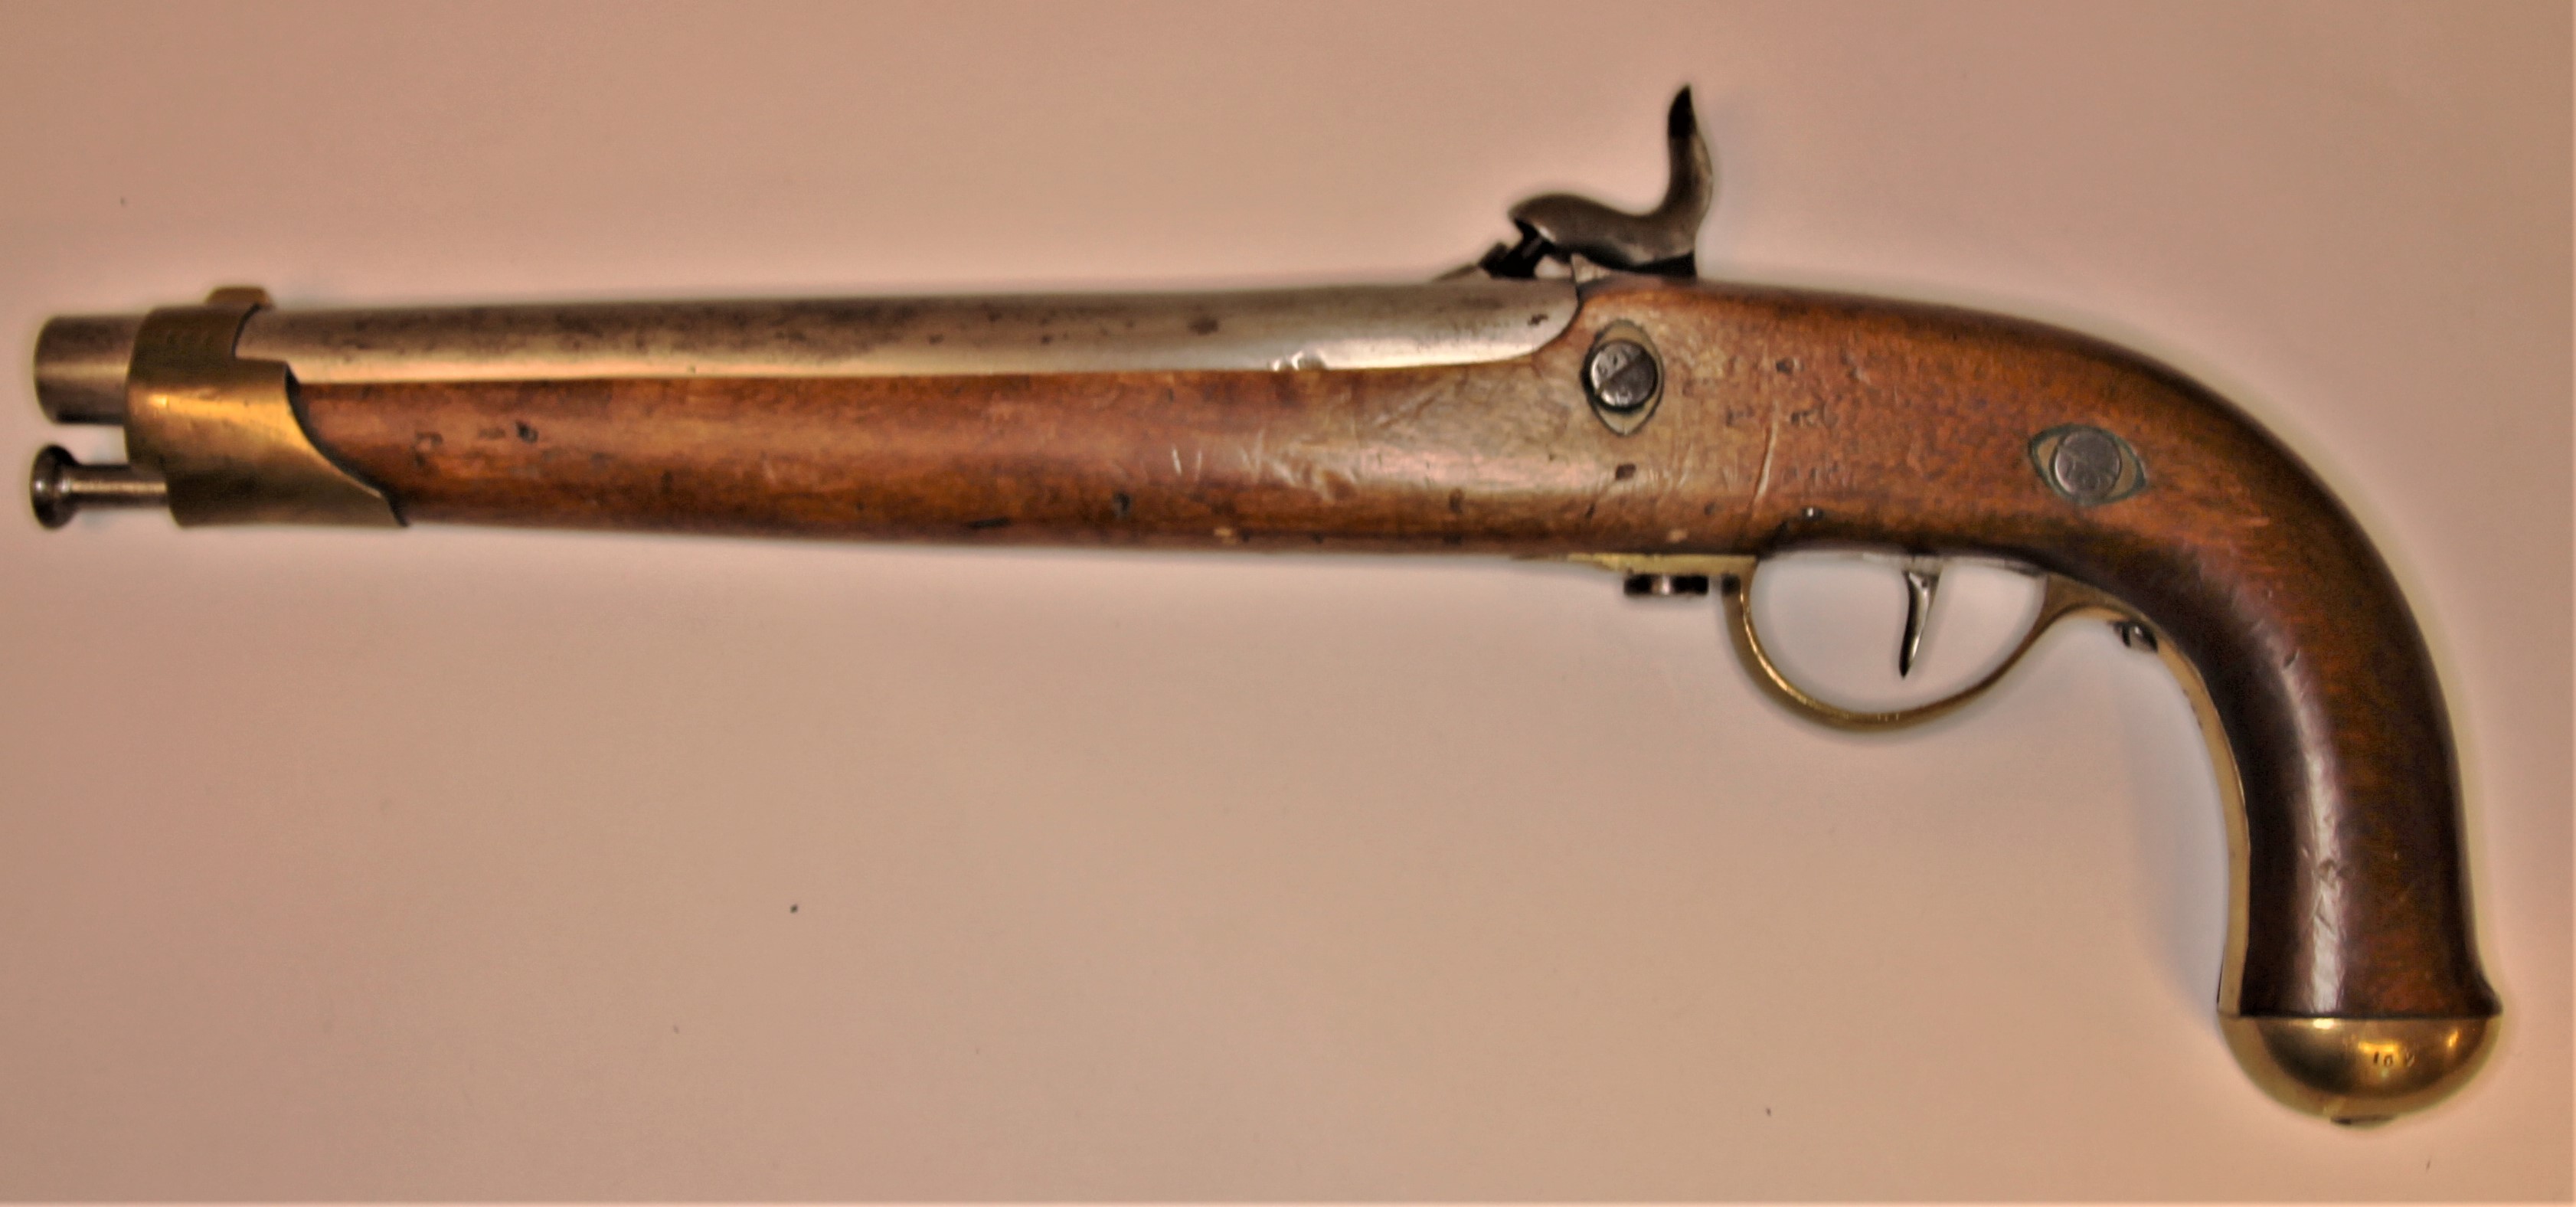 ./guns/pistol/bilder/observed/Pistol-Kongsberg-M1843-169-2.jpg